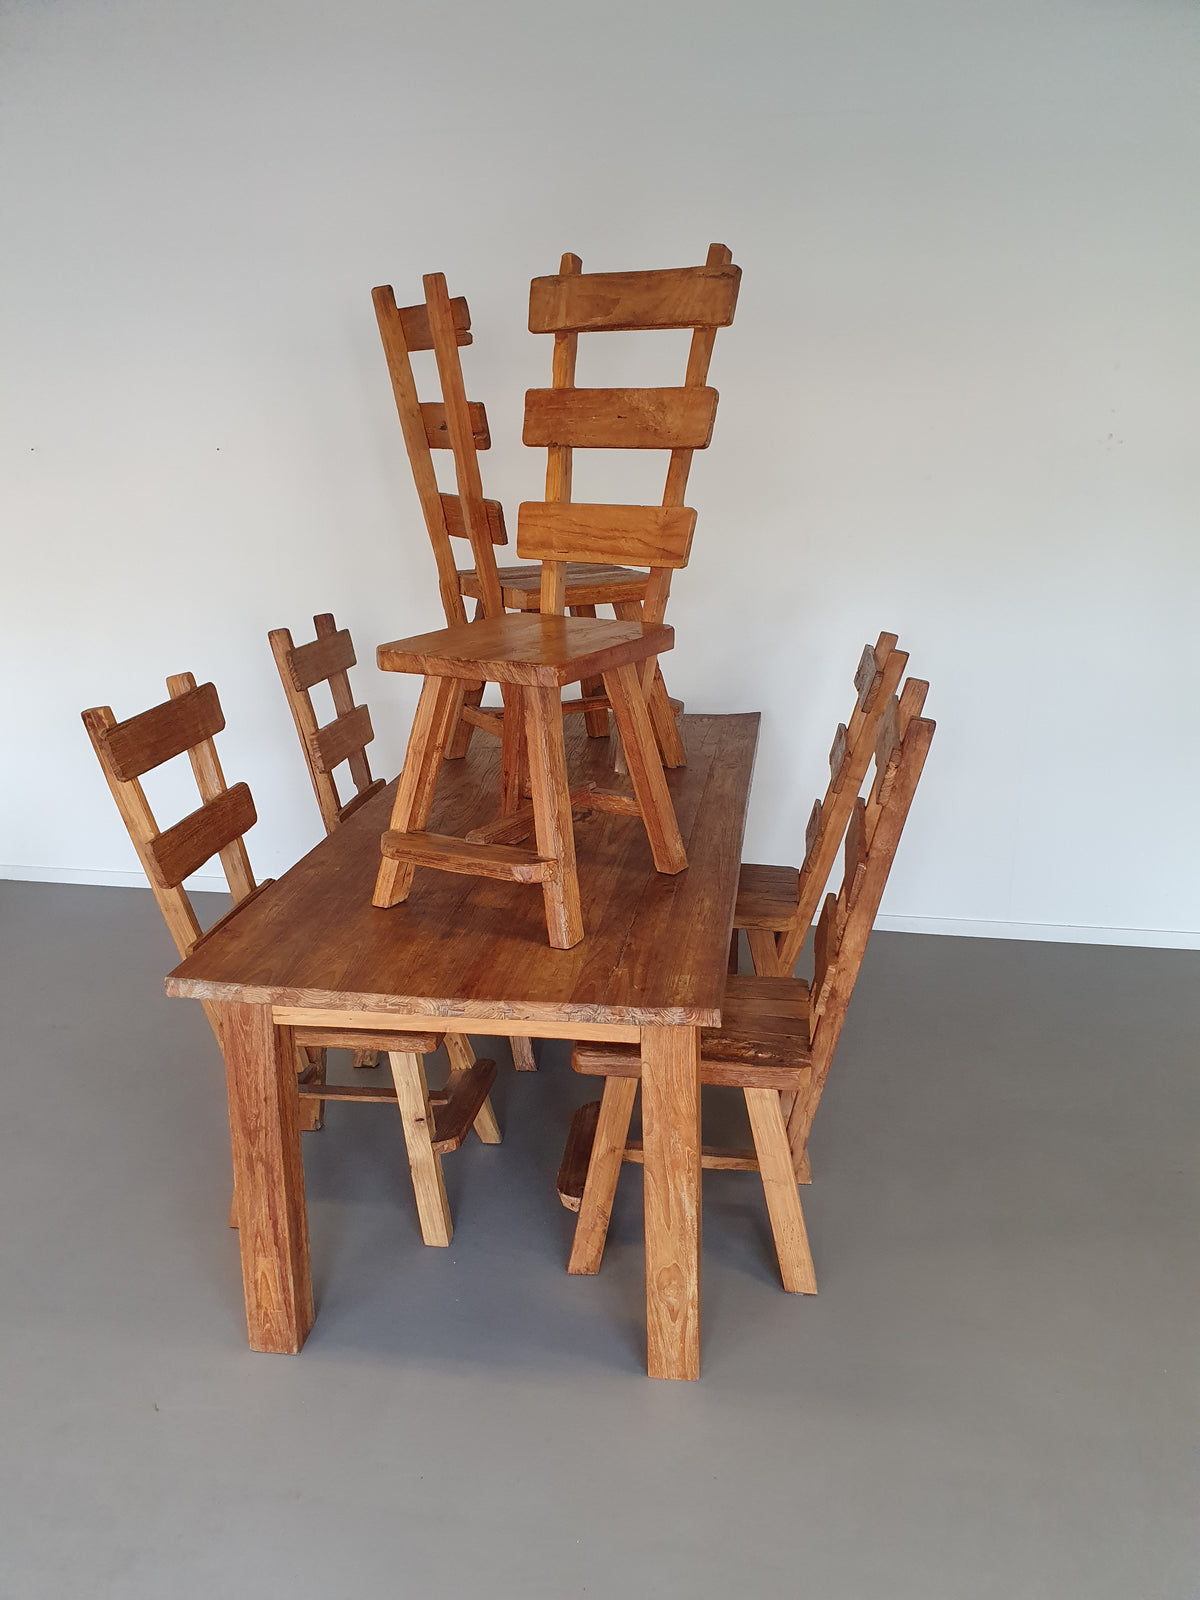 Olm wood brutalist wabi sabi dining set / 6 chairs / Table.